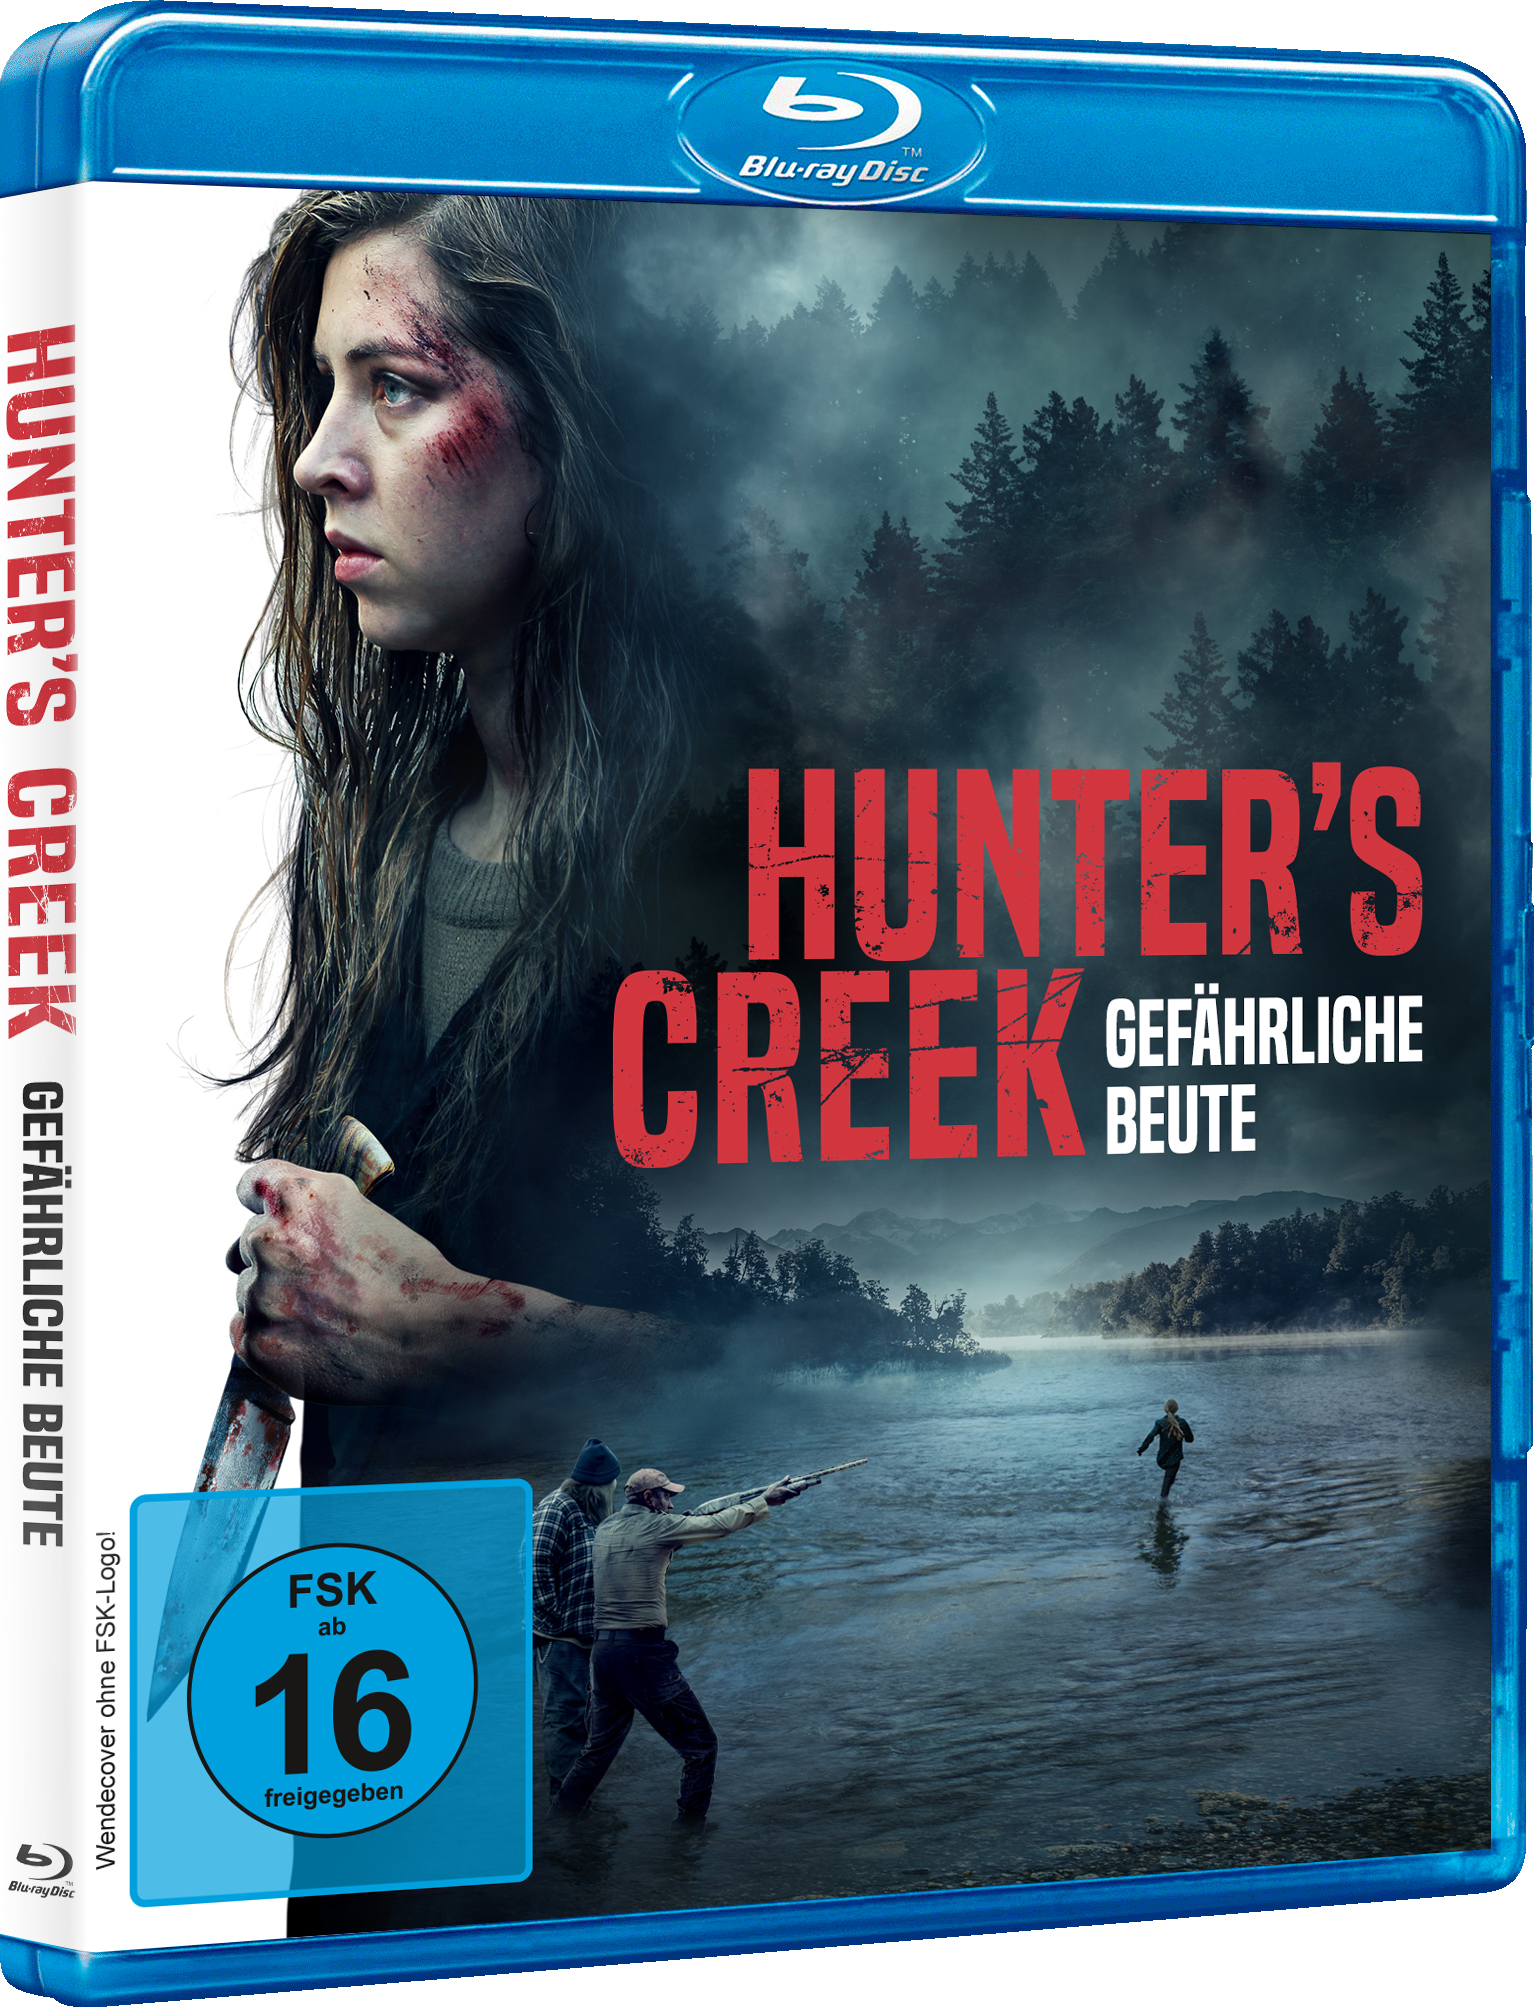 Auf dem Cover von Hunter's Creek sehen wir die Hauptdarstellerin, wie sie in die Ferne guckt.